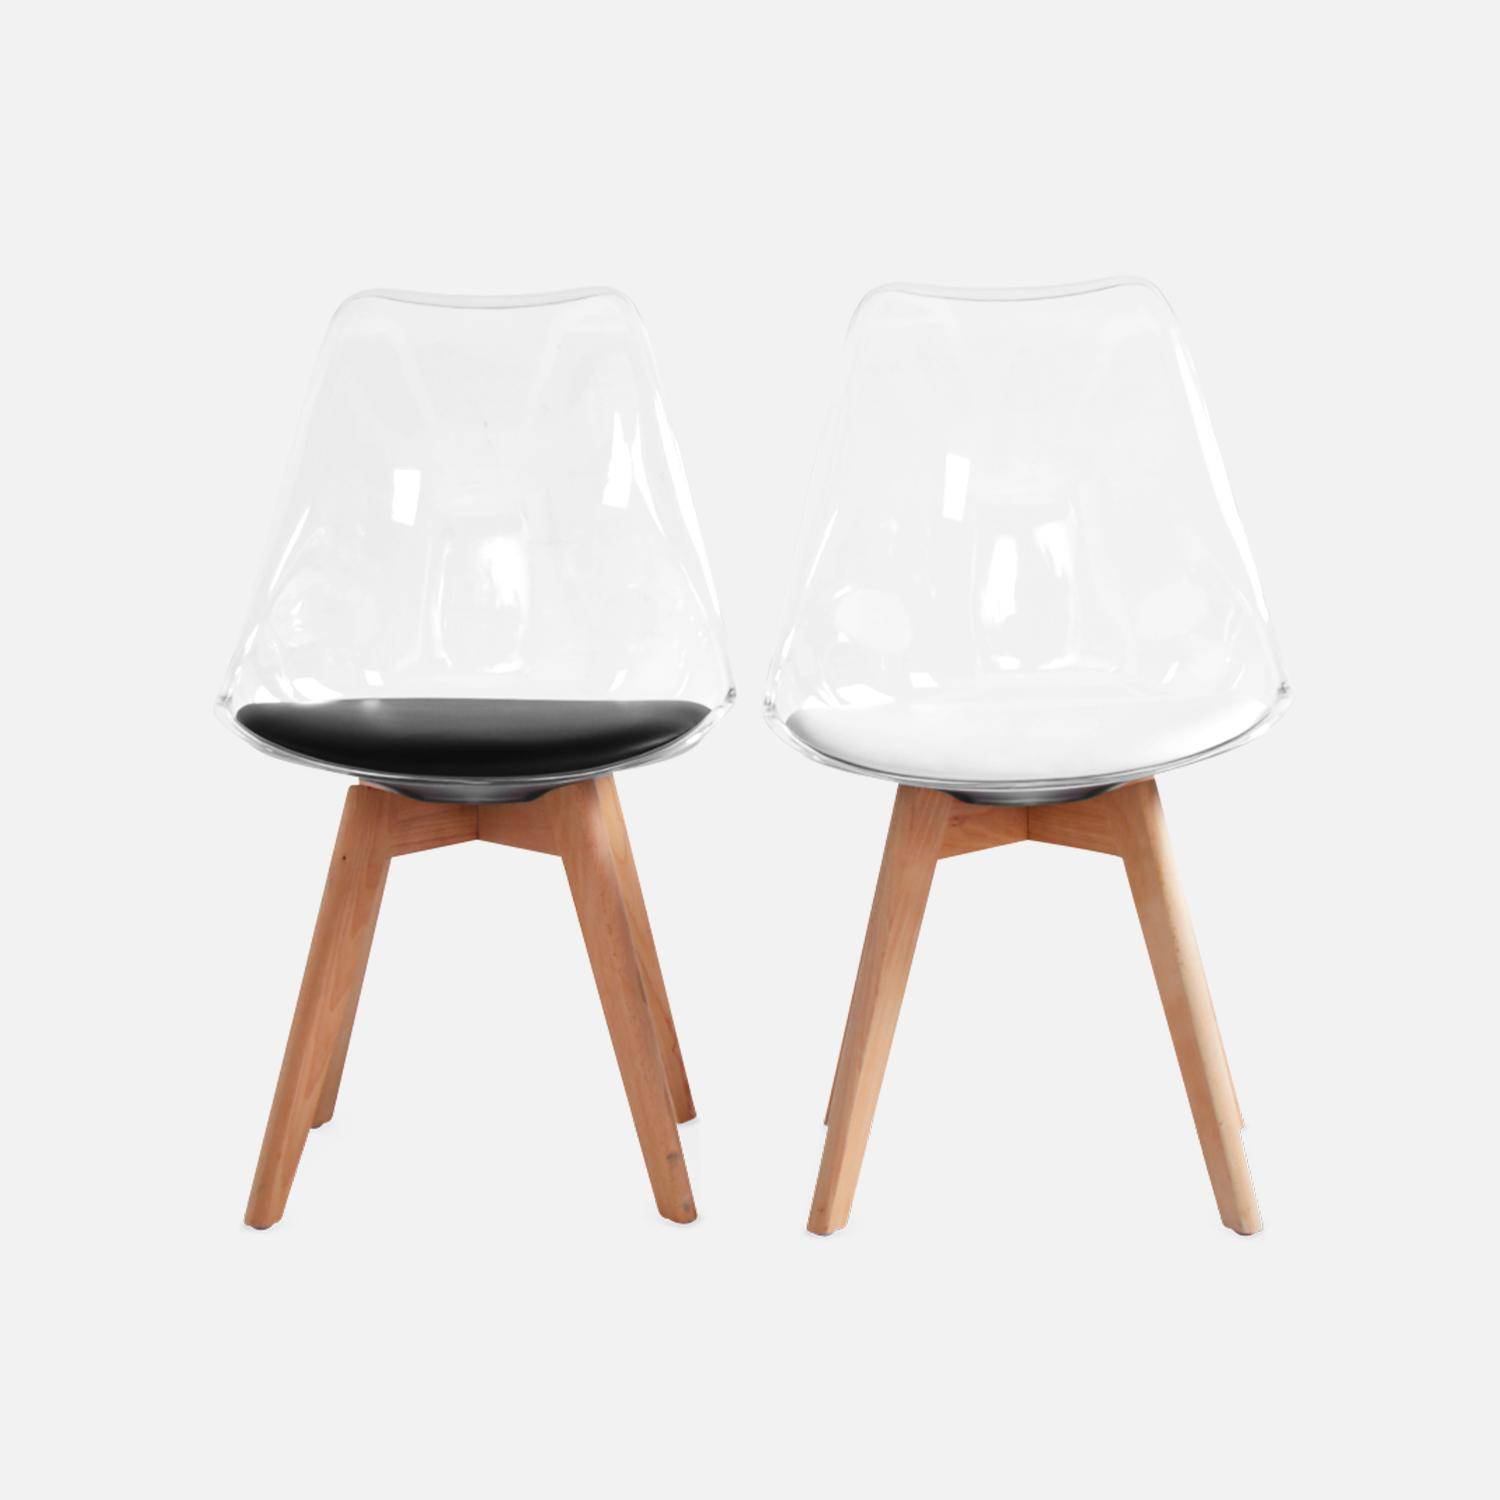 4er Set Stühle im skandinavischen Stil - Lagertha - Holzbeine, Ein Sitz, schwarzes Kissen, transparente Sitzschale,sweeek,Photo8